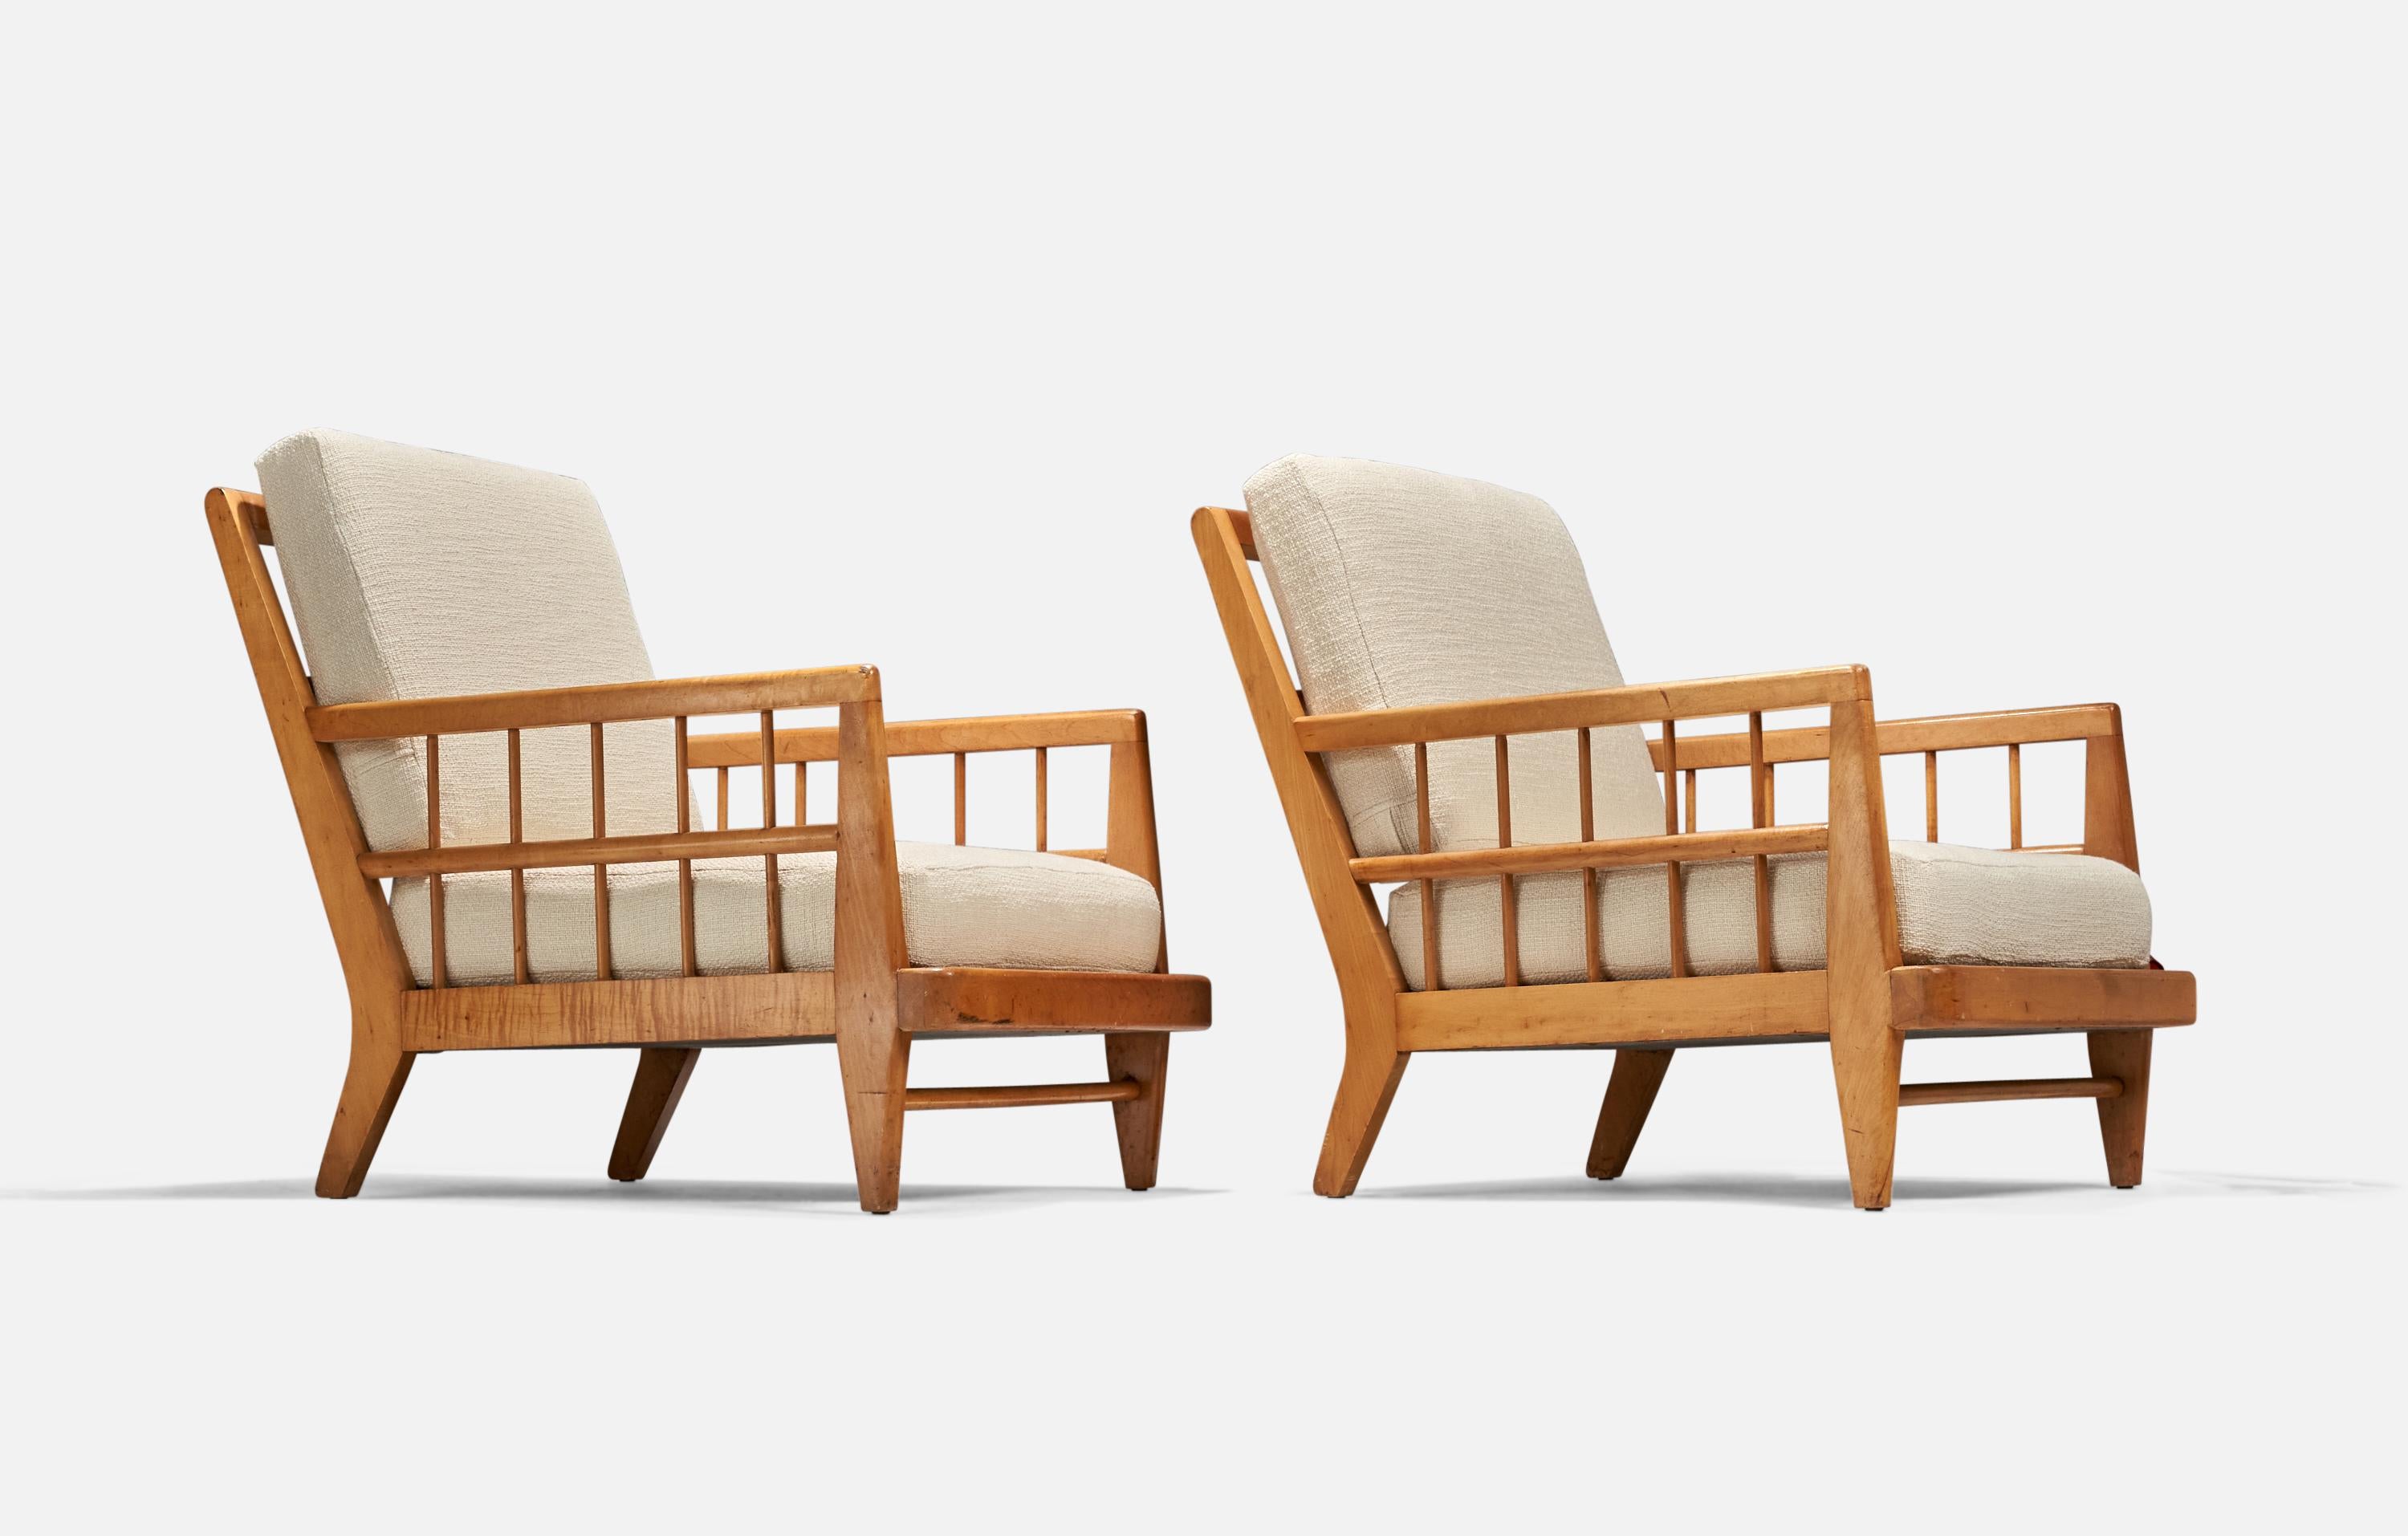 Ein Paar Sessel aus Buche und weißem Stoff, entworfen von Edward Wormley und hergestellt von Drexel, Vereinigte Staaten, 1940er Jahre.

Maß: Sitzhöhe (Zoll) : 14.5.